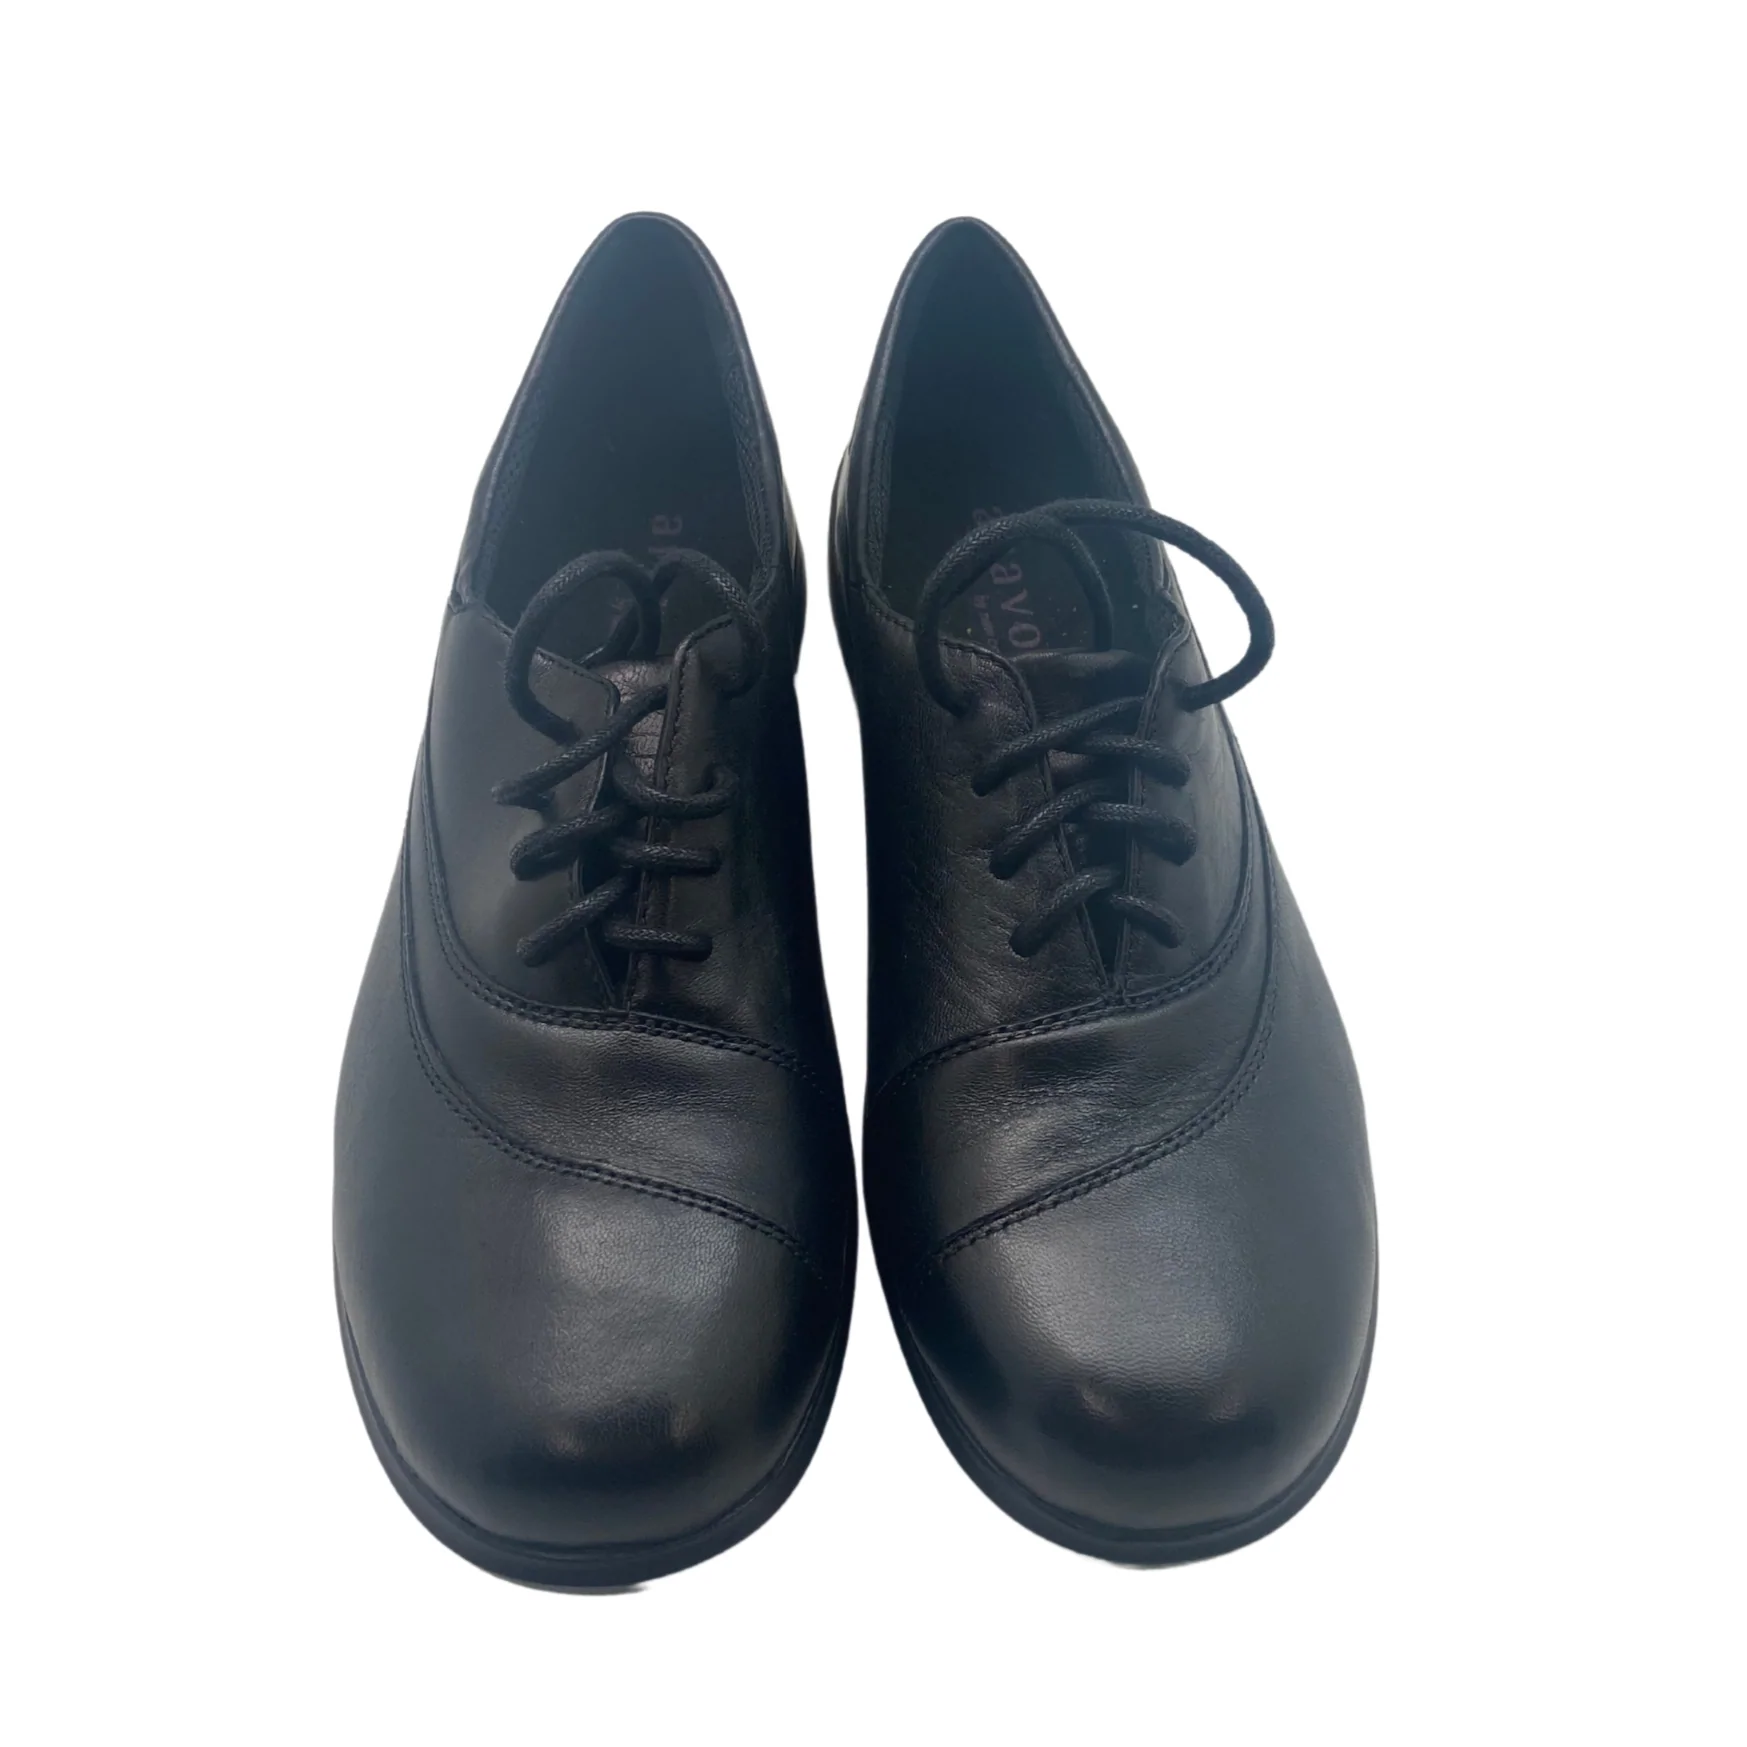 Aravon by New Balance Women’s Black Francesca Shoes / Size 9.5 ...